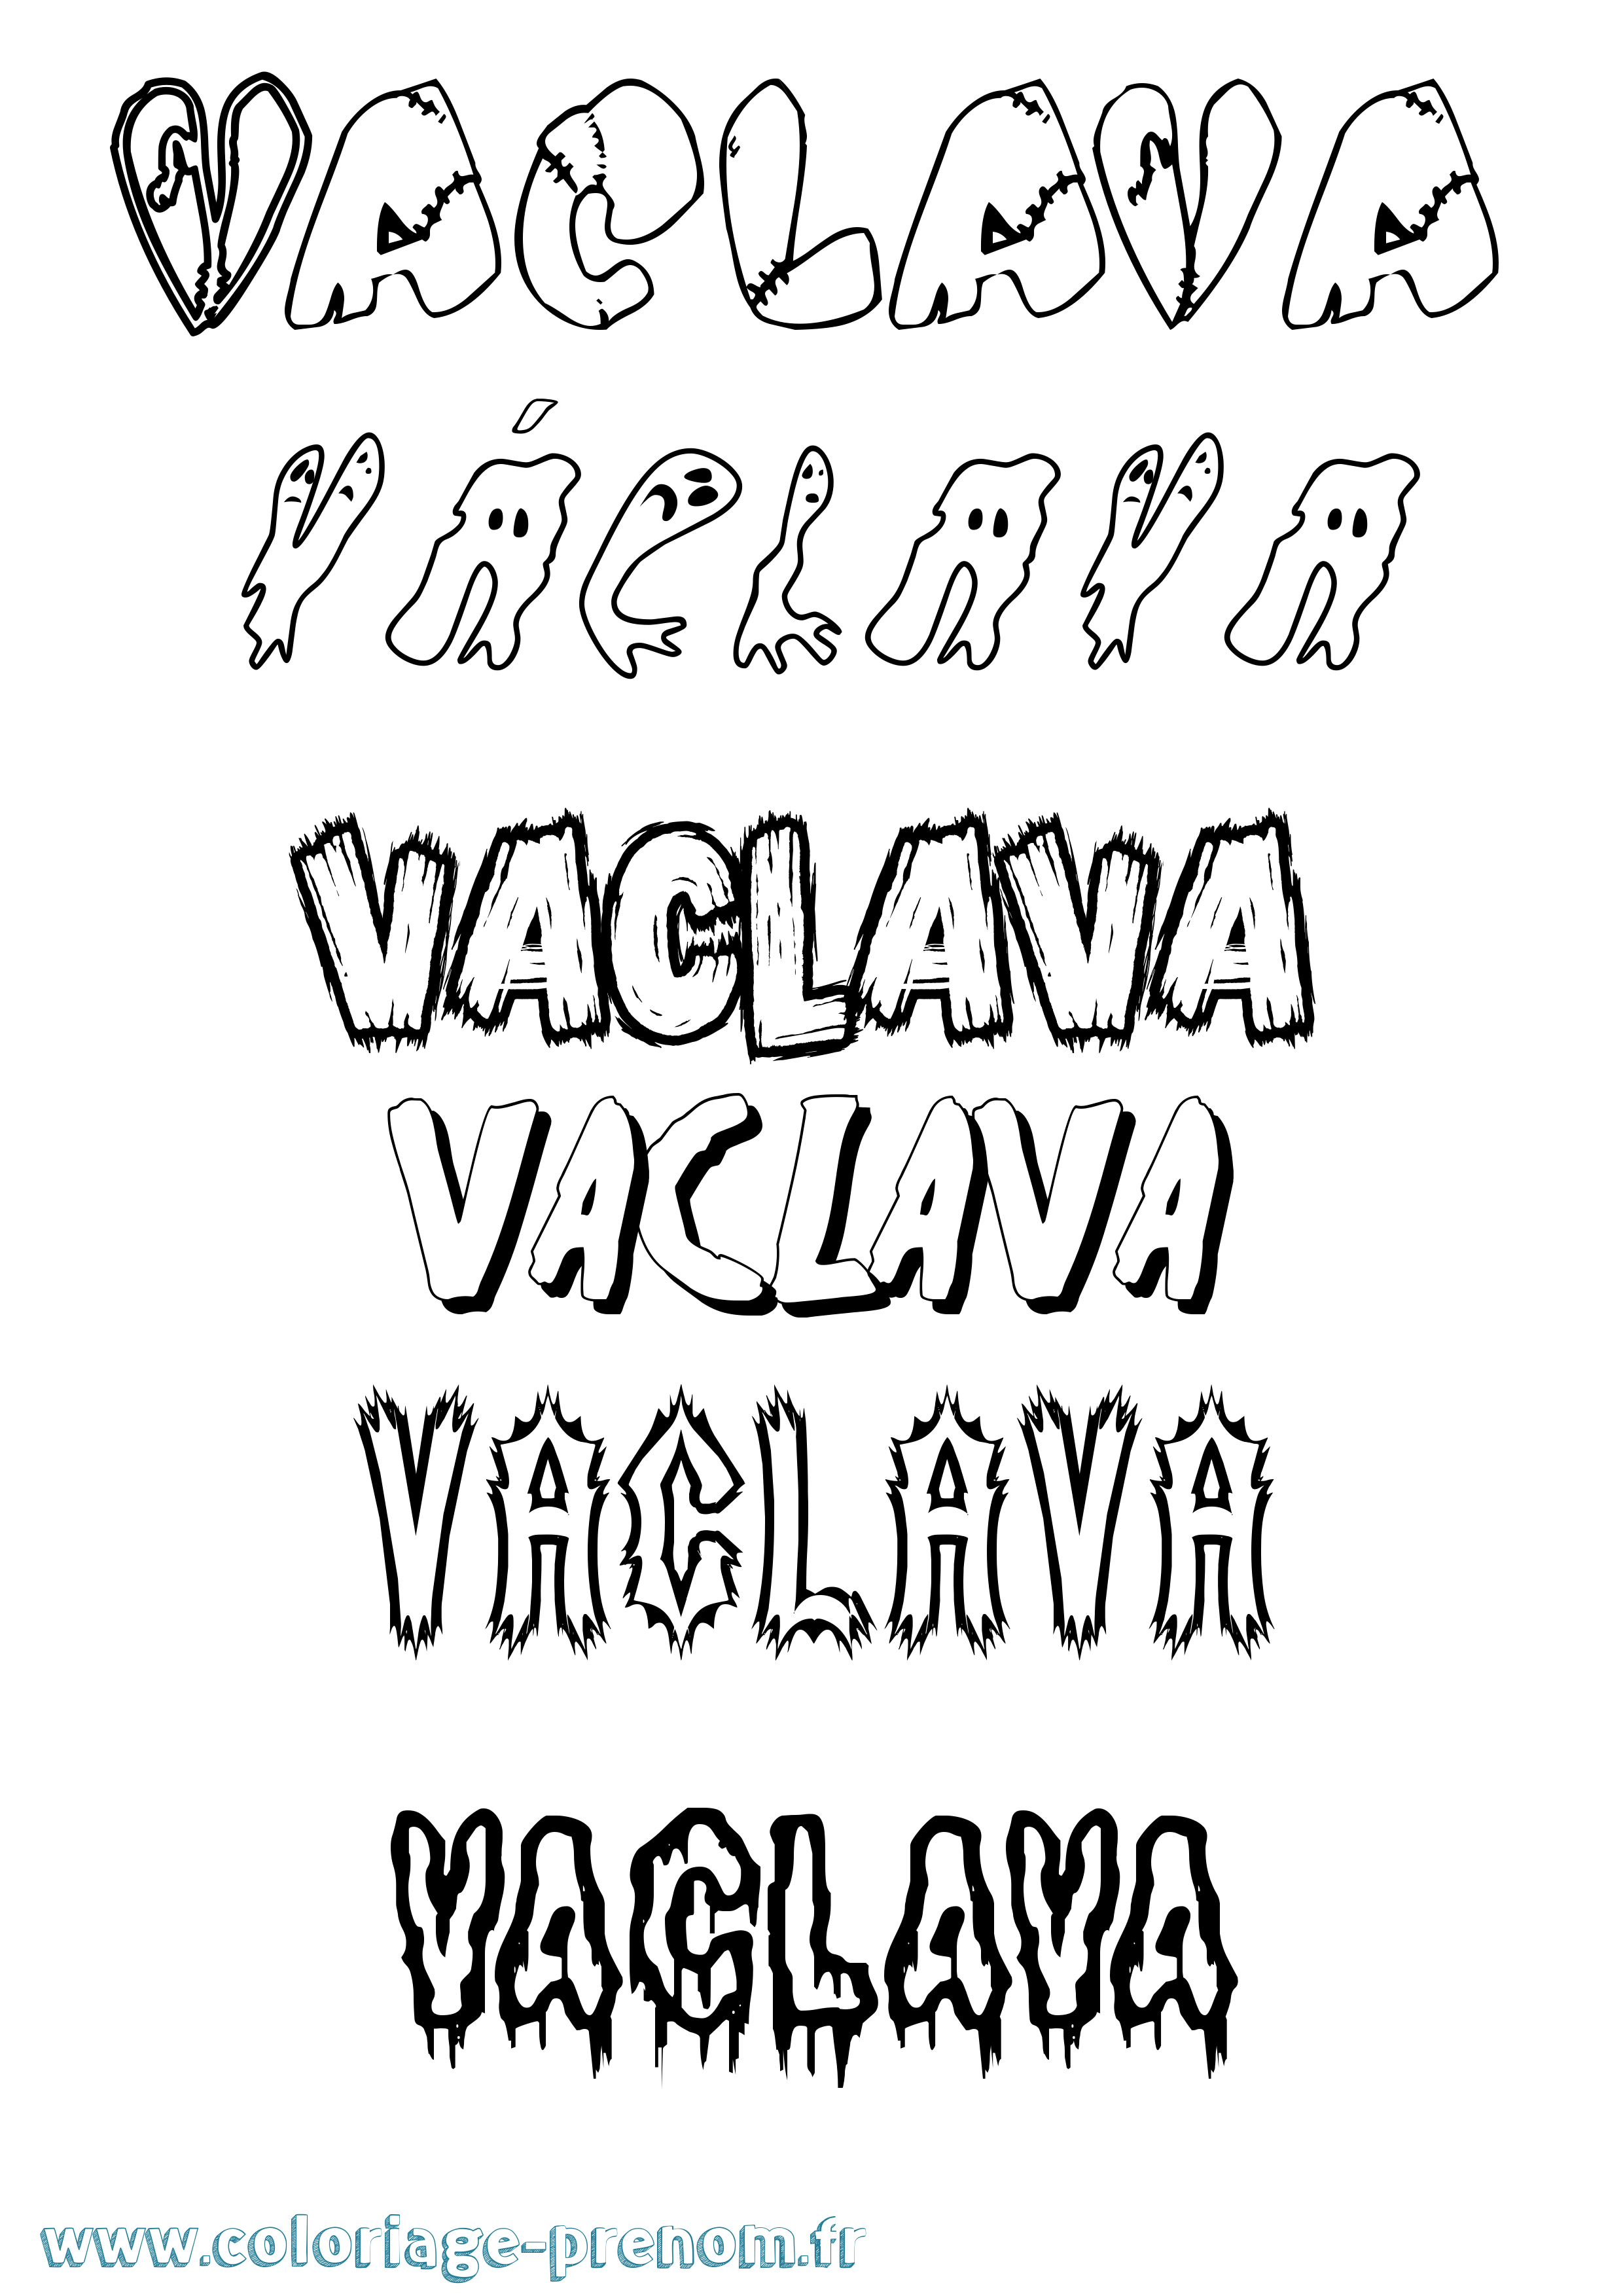 Coloriage prénom Václava Frisson